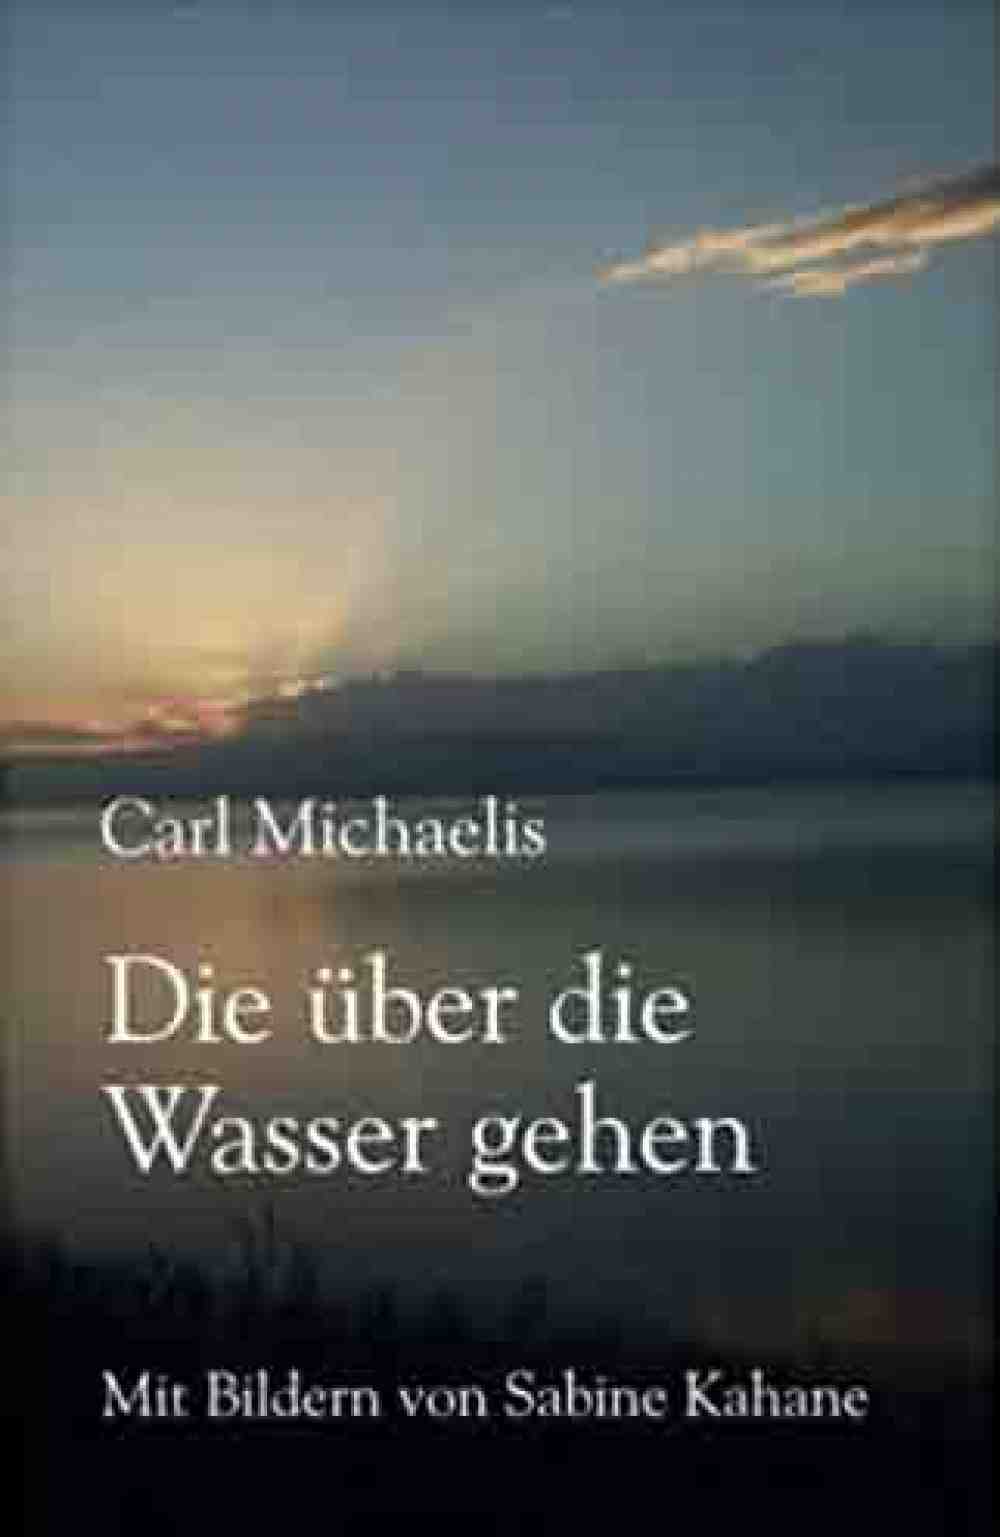 Anzeige: Lesetipps für Gütersloh: Carl Michaelis, »Die über die Wasser gehen«, Buch online bestellen, online kaufen